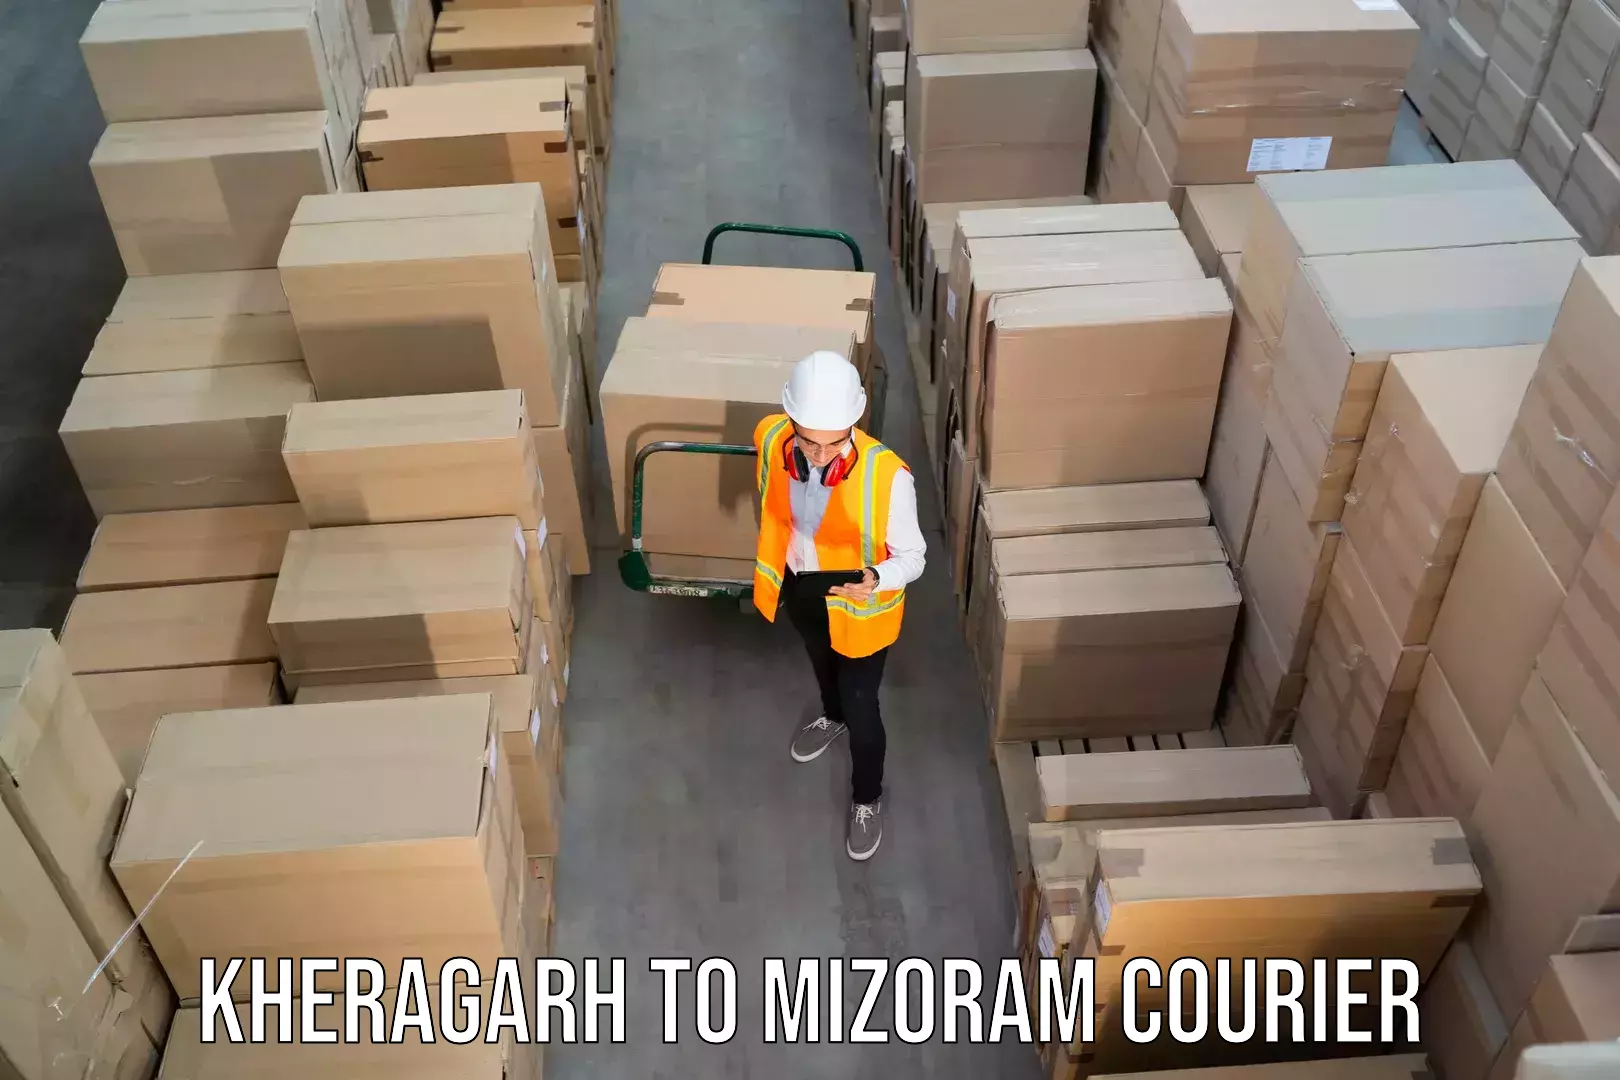 Local delivery service Kheragarh to Mizoram